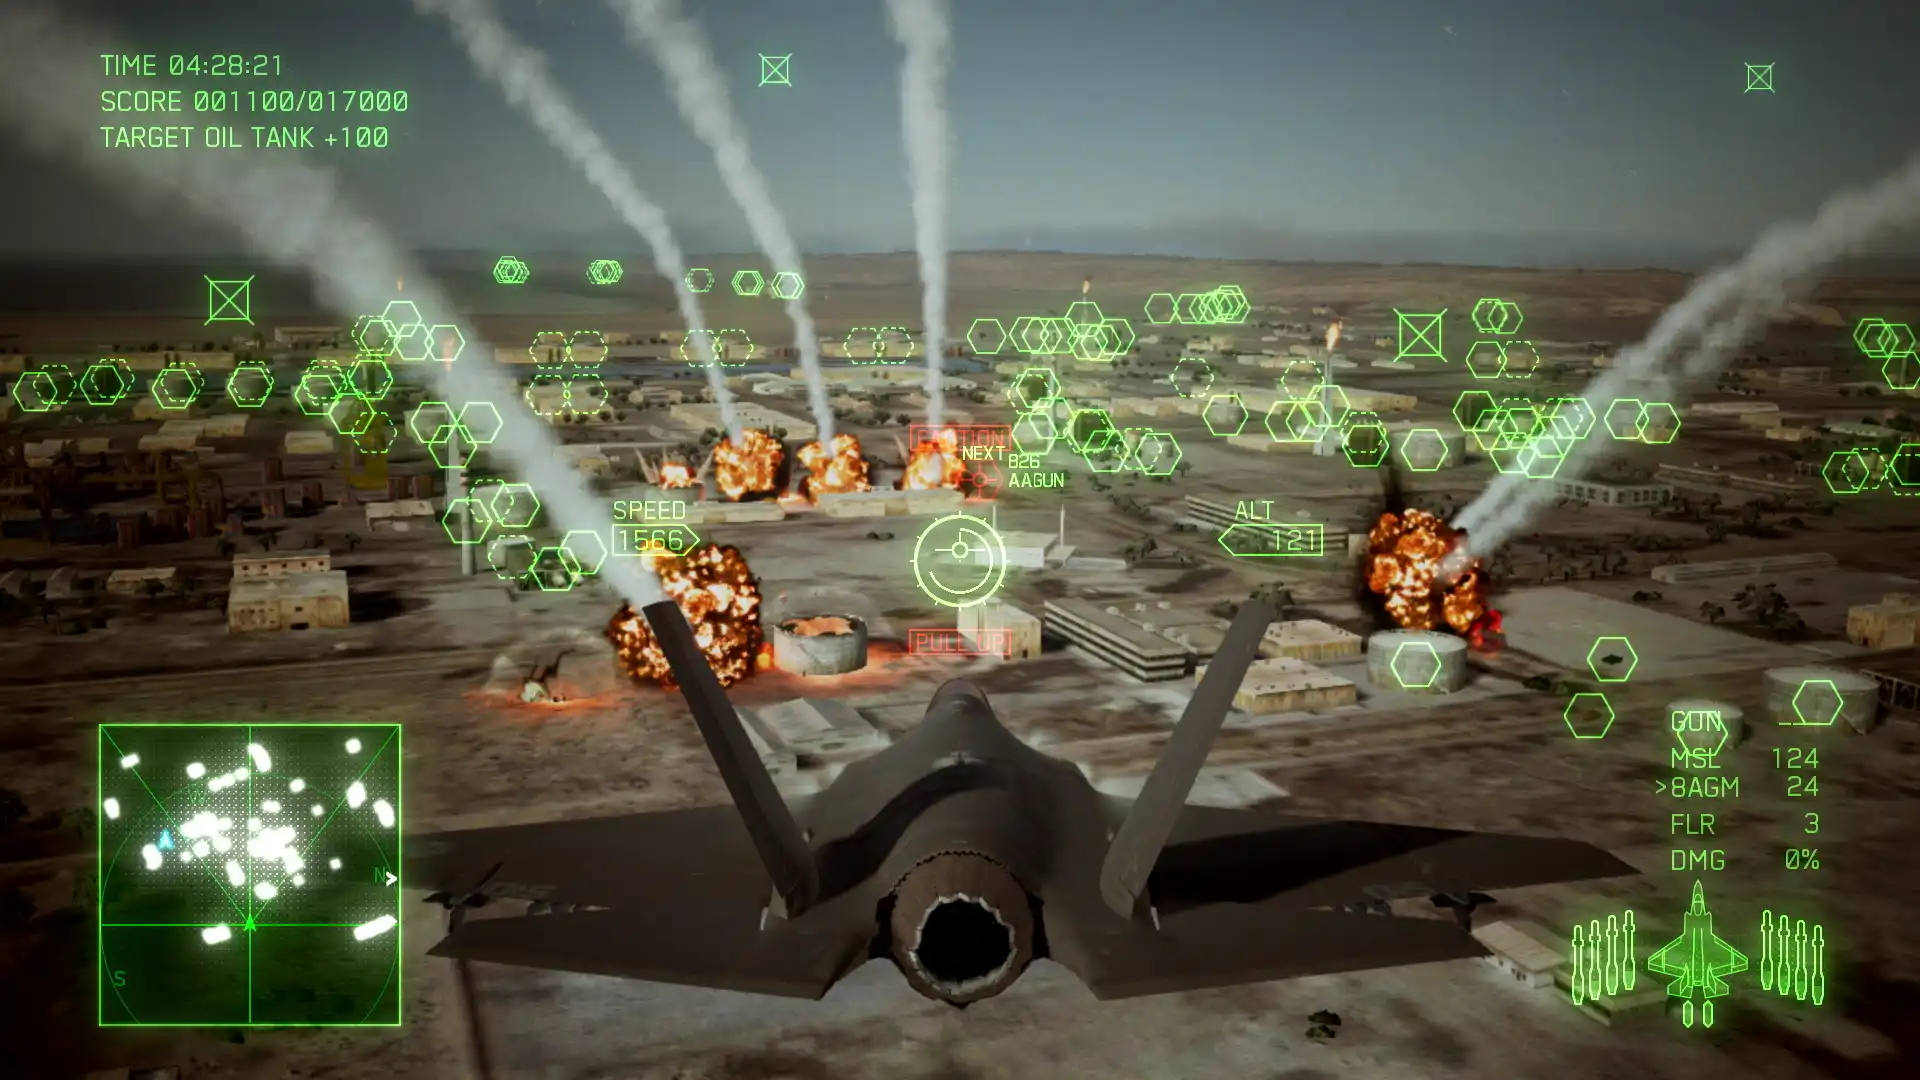 Ace Combat 7: Skies Unknown atterra su Switch a luglio: contenuti, bonus e trailer